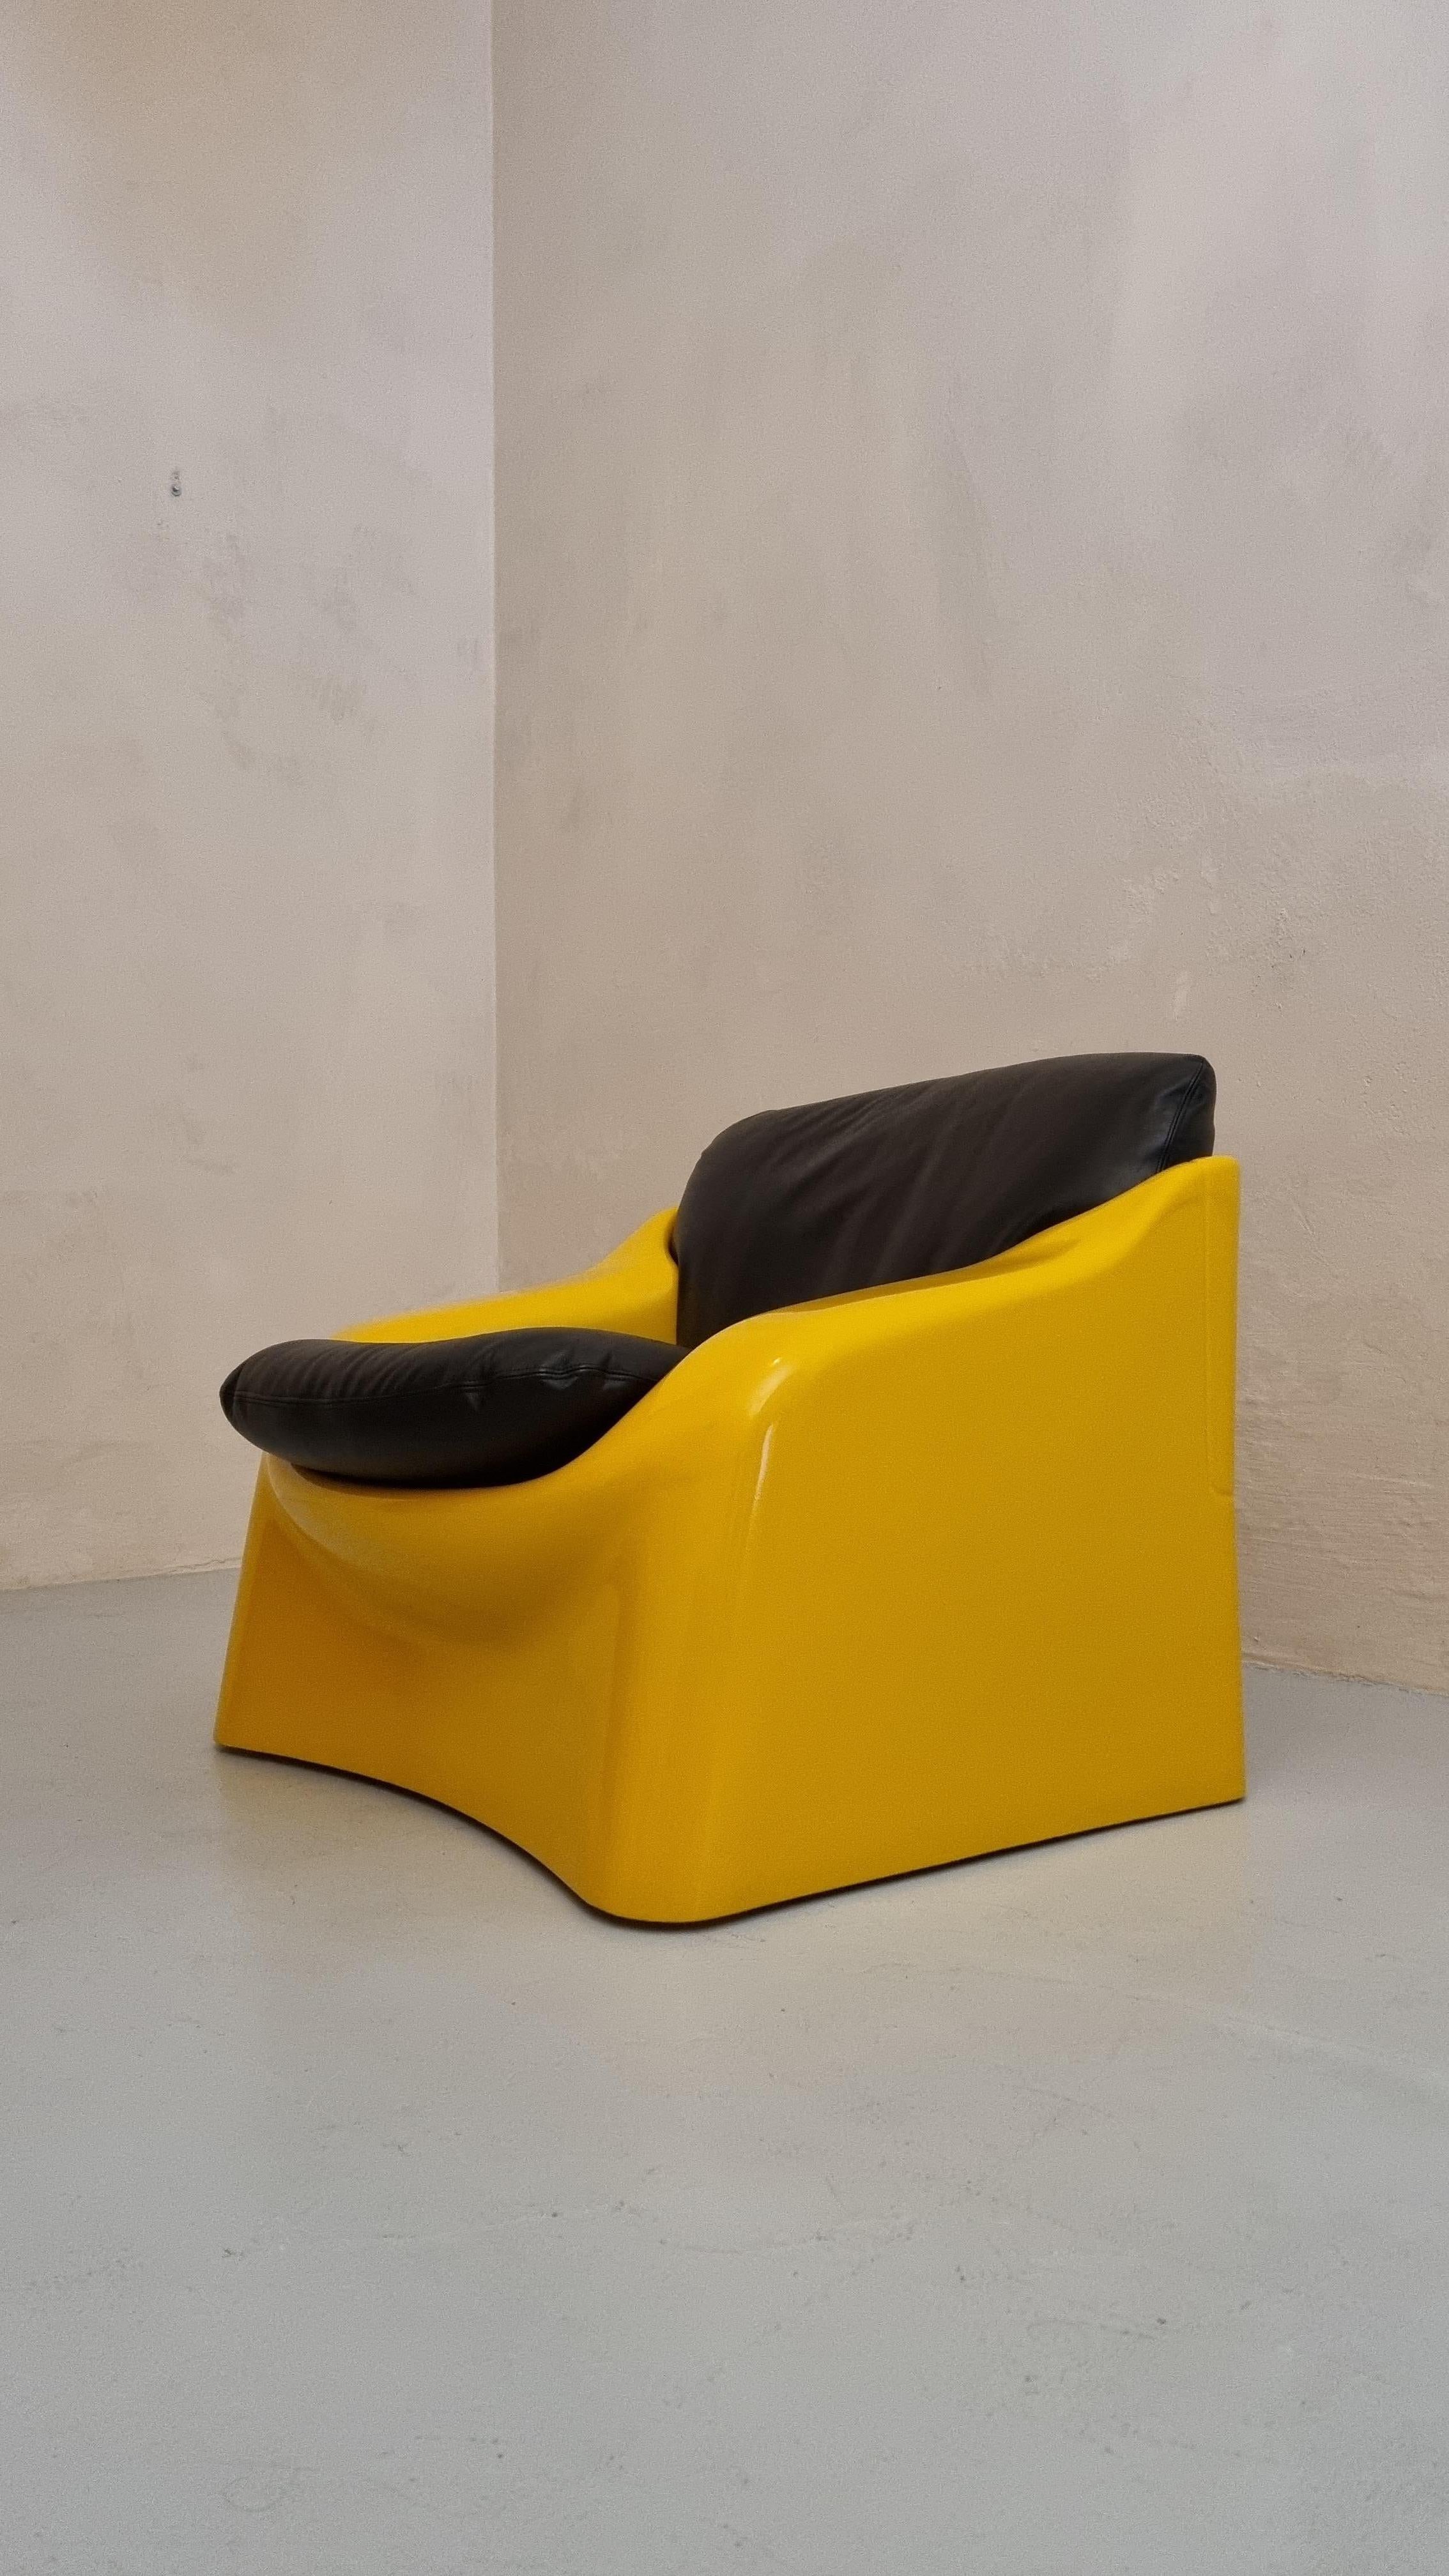 Fauteuil Galassia conçu par Ferdinando Buzzi pour Ferruccio Brunati , années 70.
Structure en polystyrène antichoc et revêtement plastique, assise en cuir de vachette.
Témoignage valable des premiers essais, le plastique antichoc dans le domaine de